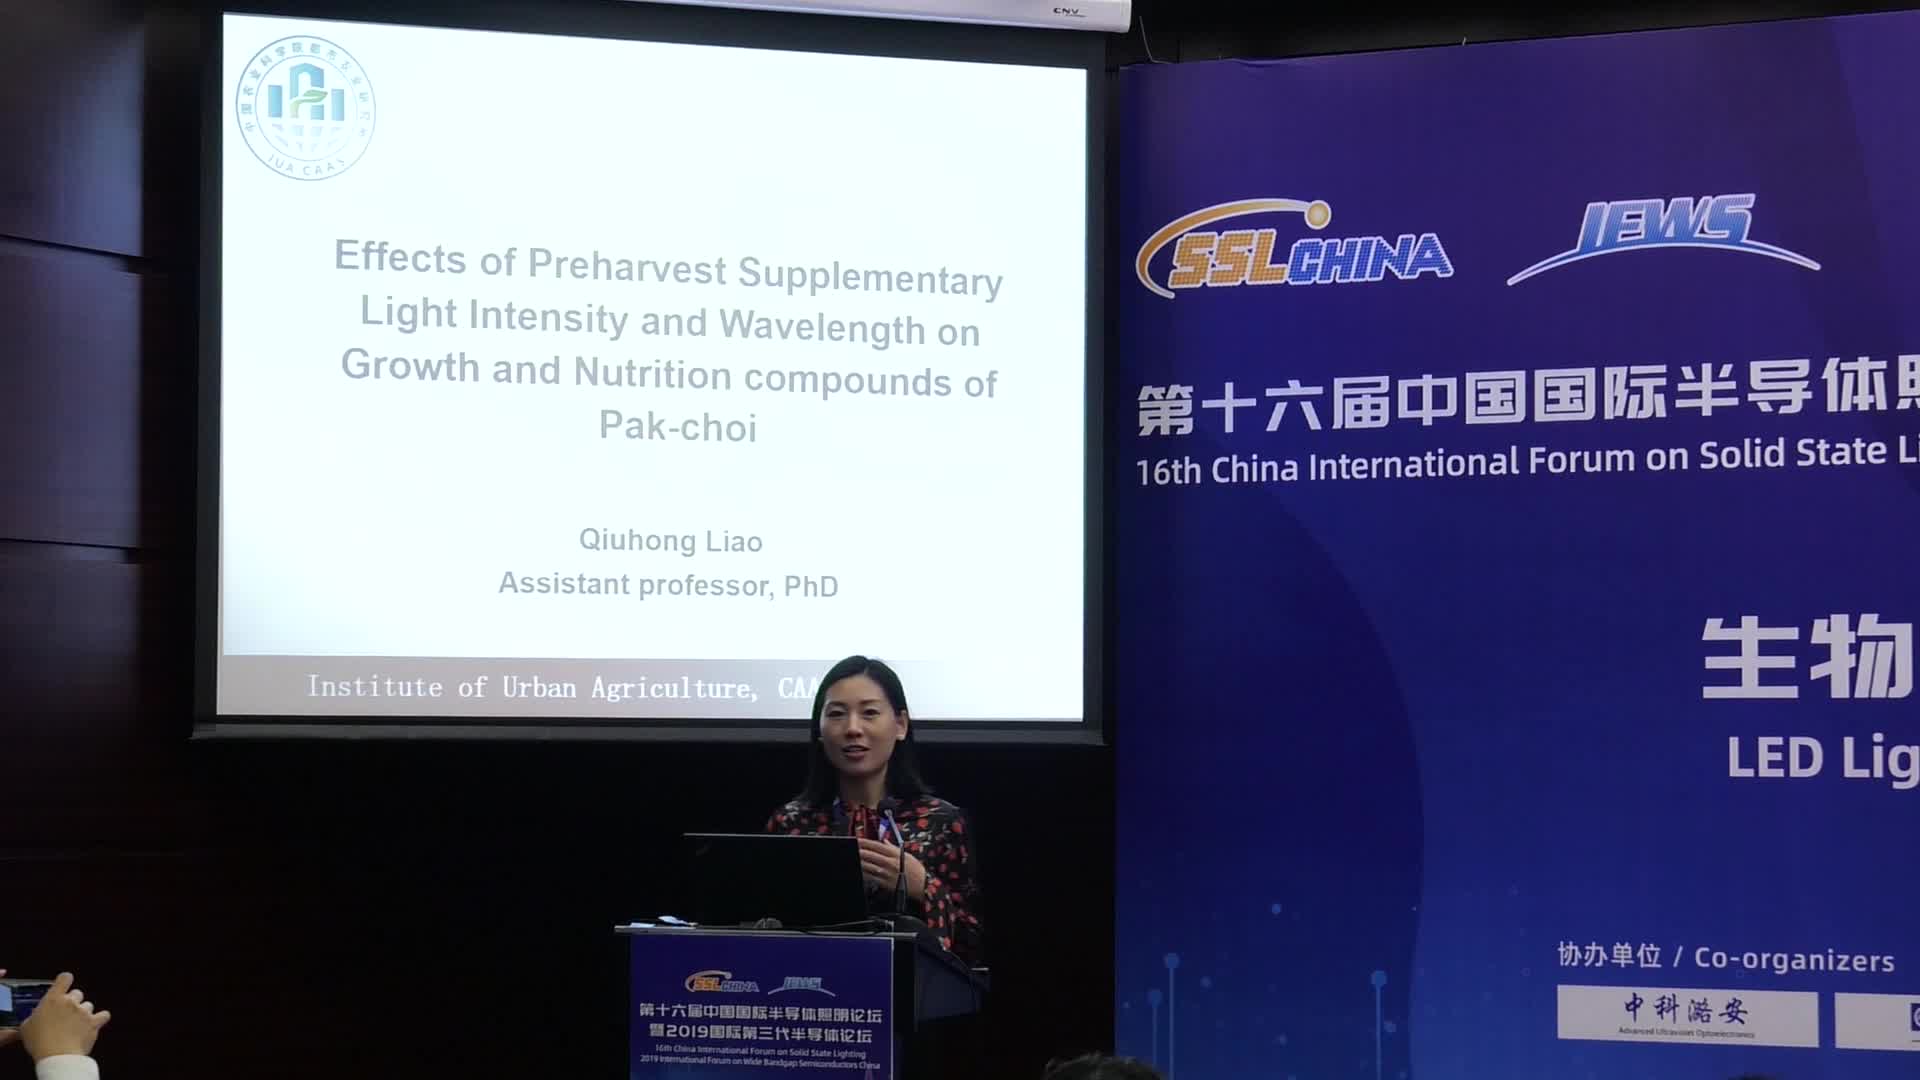 【视频报告】中国农业科学院廖秋红：采前补光强度和波长对小白菜的生长与生理特征的影响